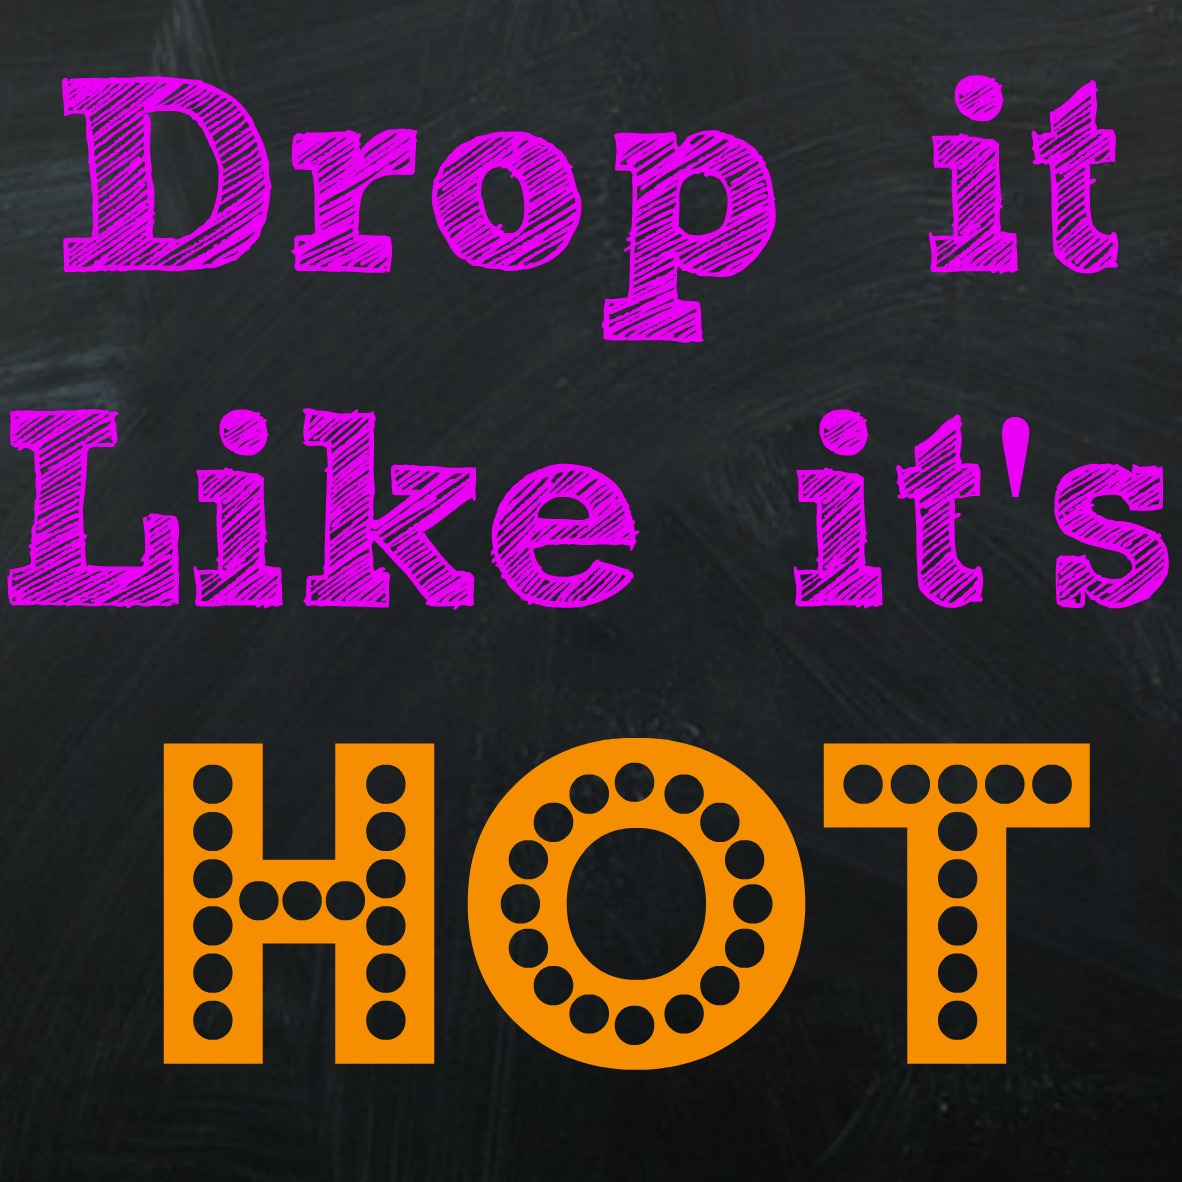 Дроп ИТ лайк ИТС хот. Its hot картинка. Drop it. Drop it like it's hot. Drop me like